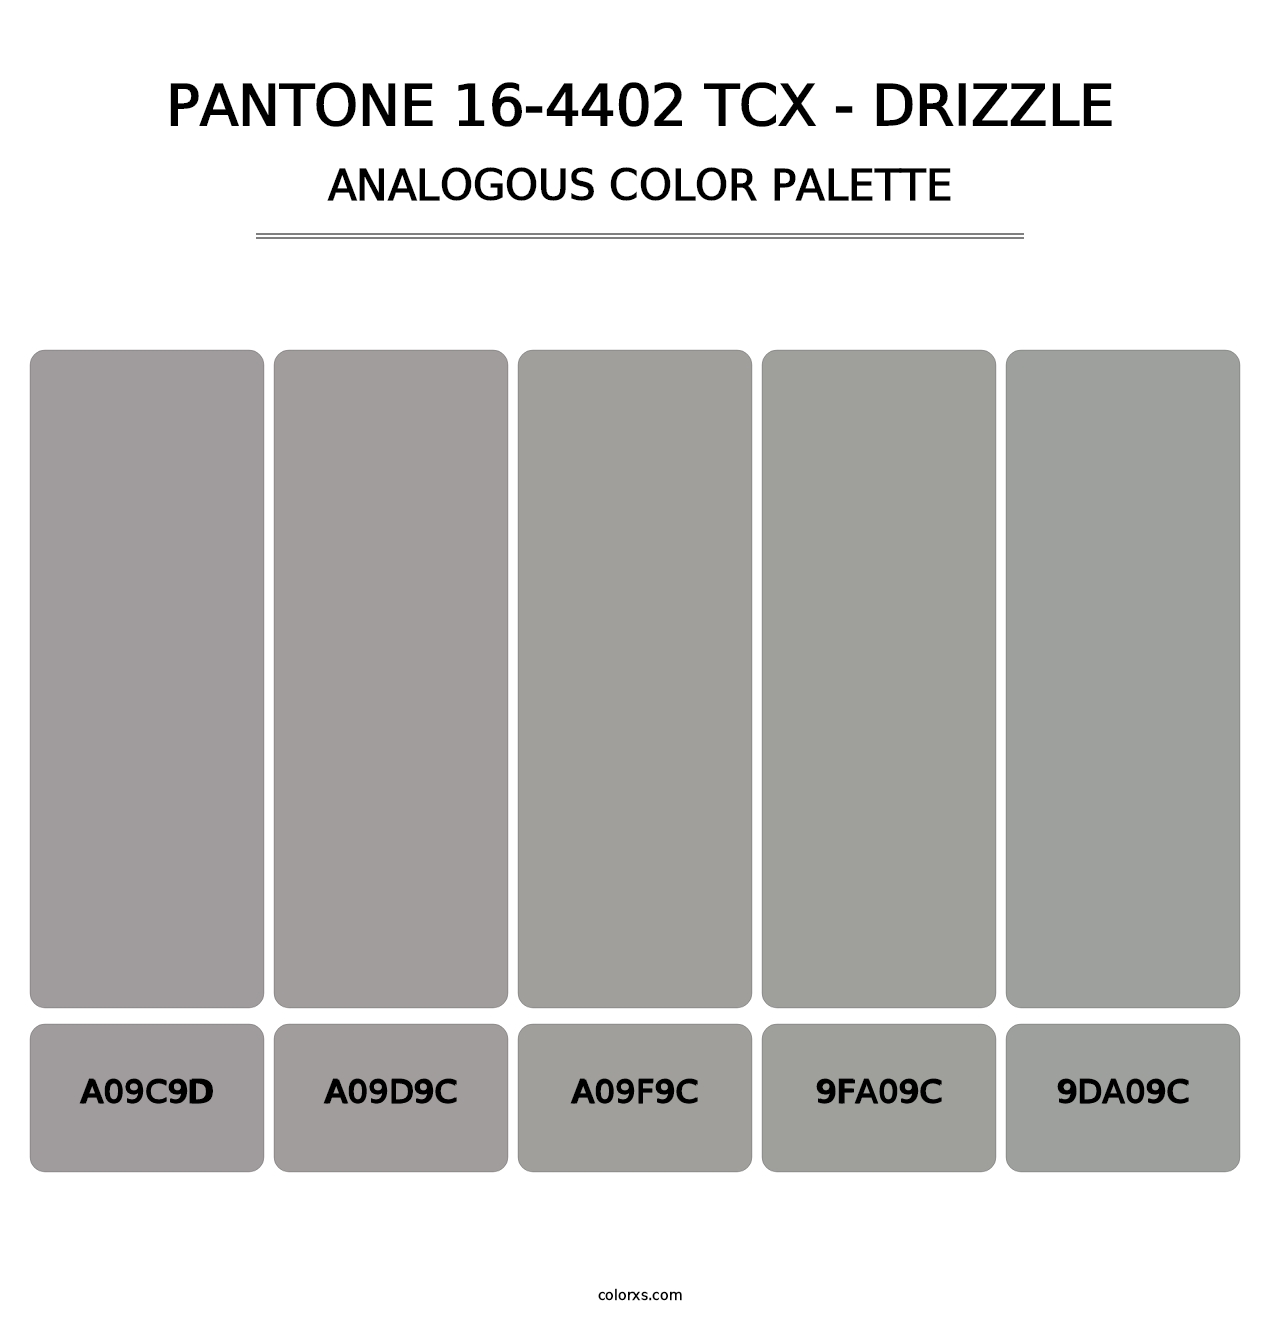 PANTONE 16-4402 TCX - Drizzle - Analogous Color Palette